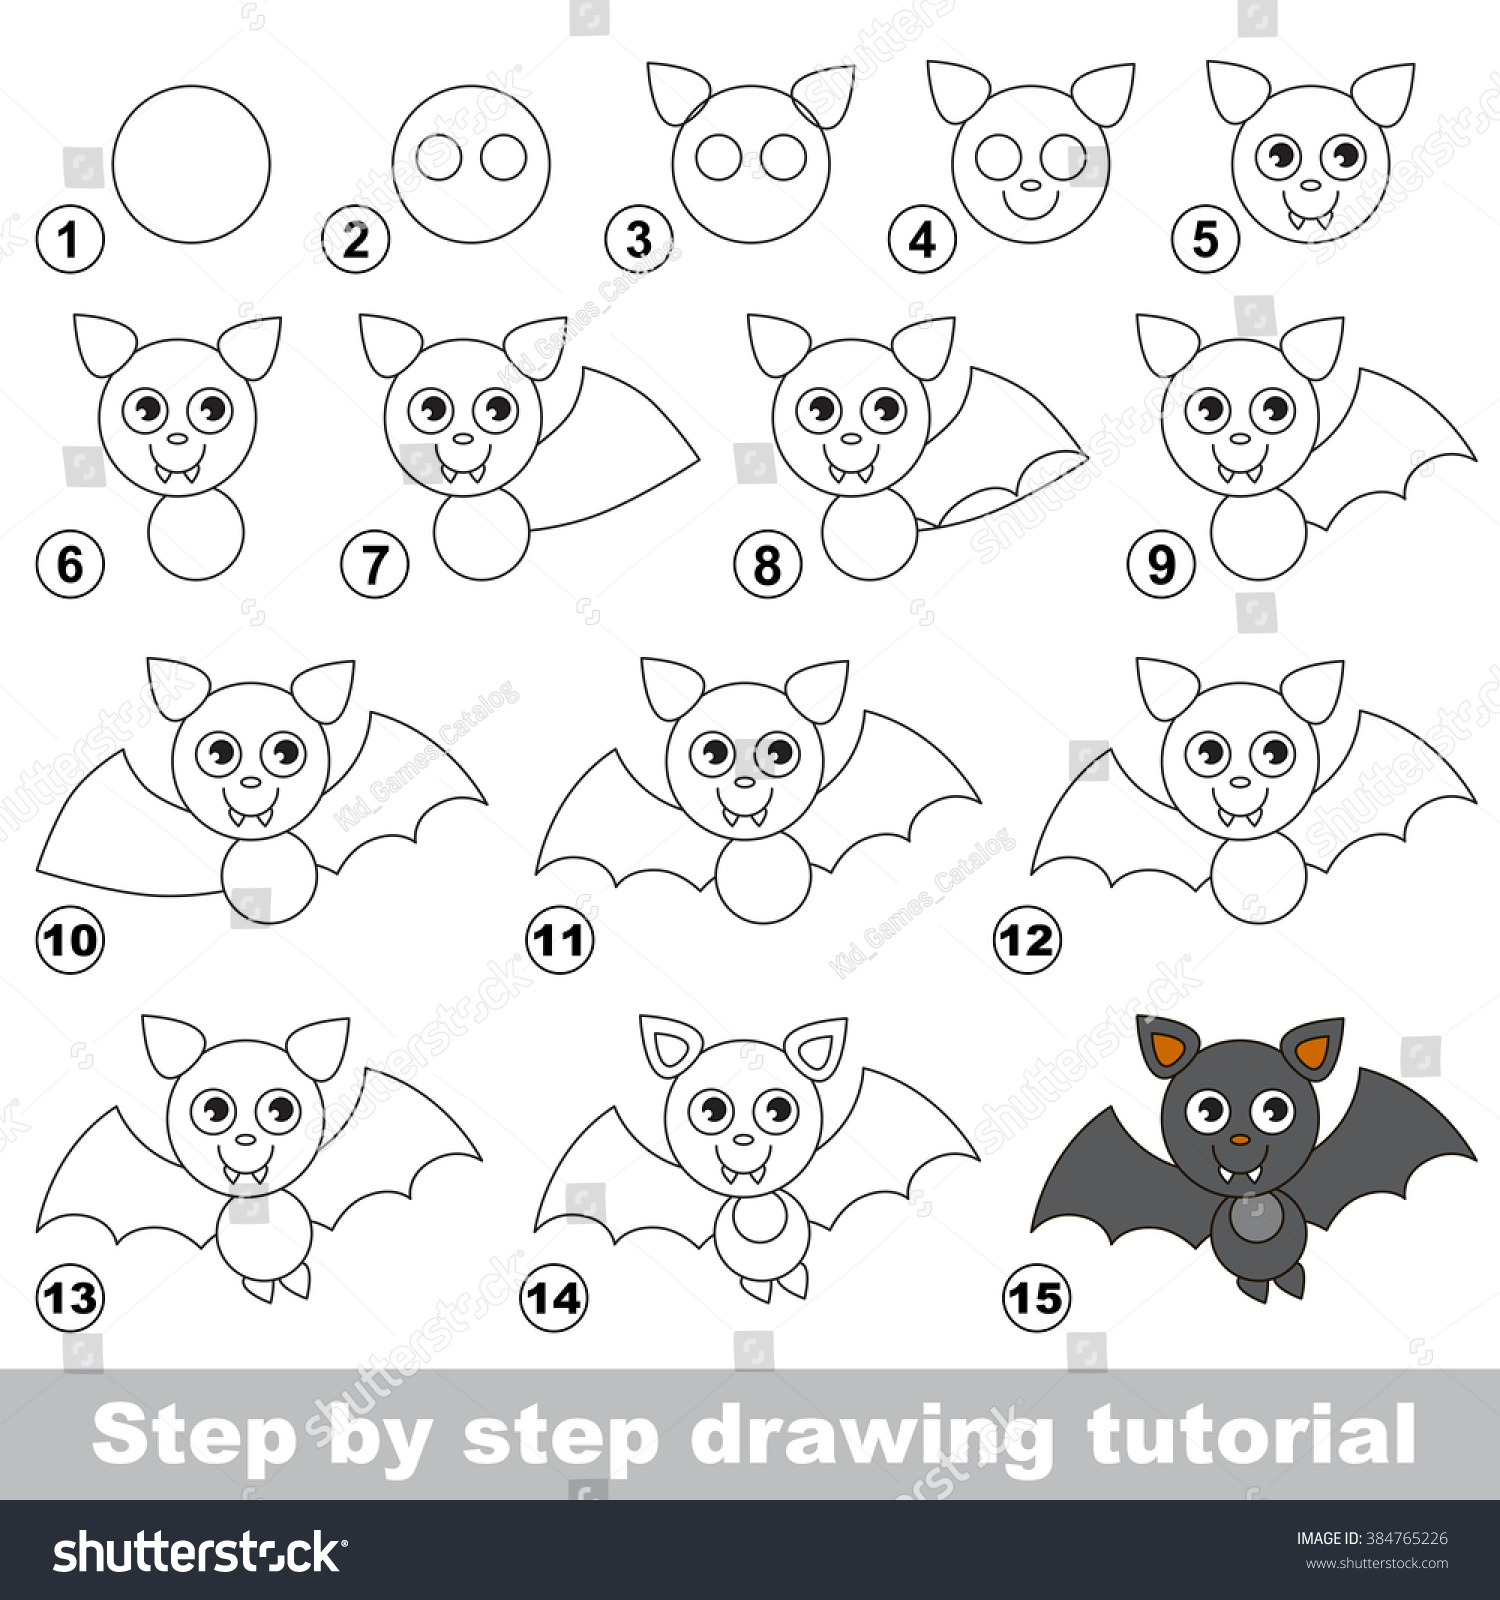 Vampire Bat. Drawing Tutorial. Stock Vector Illustration 384765226 ...